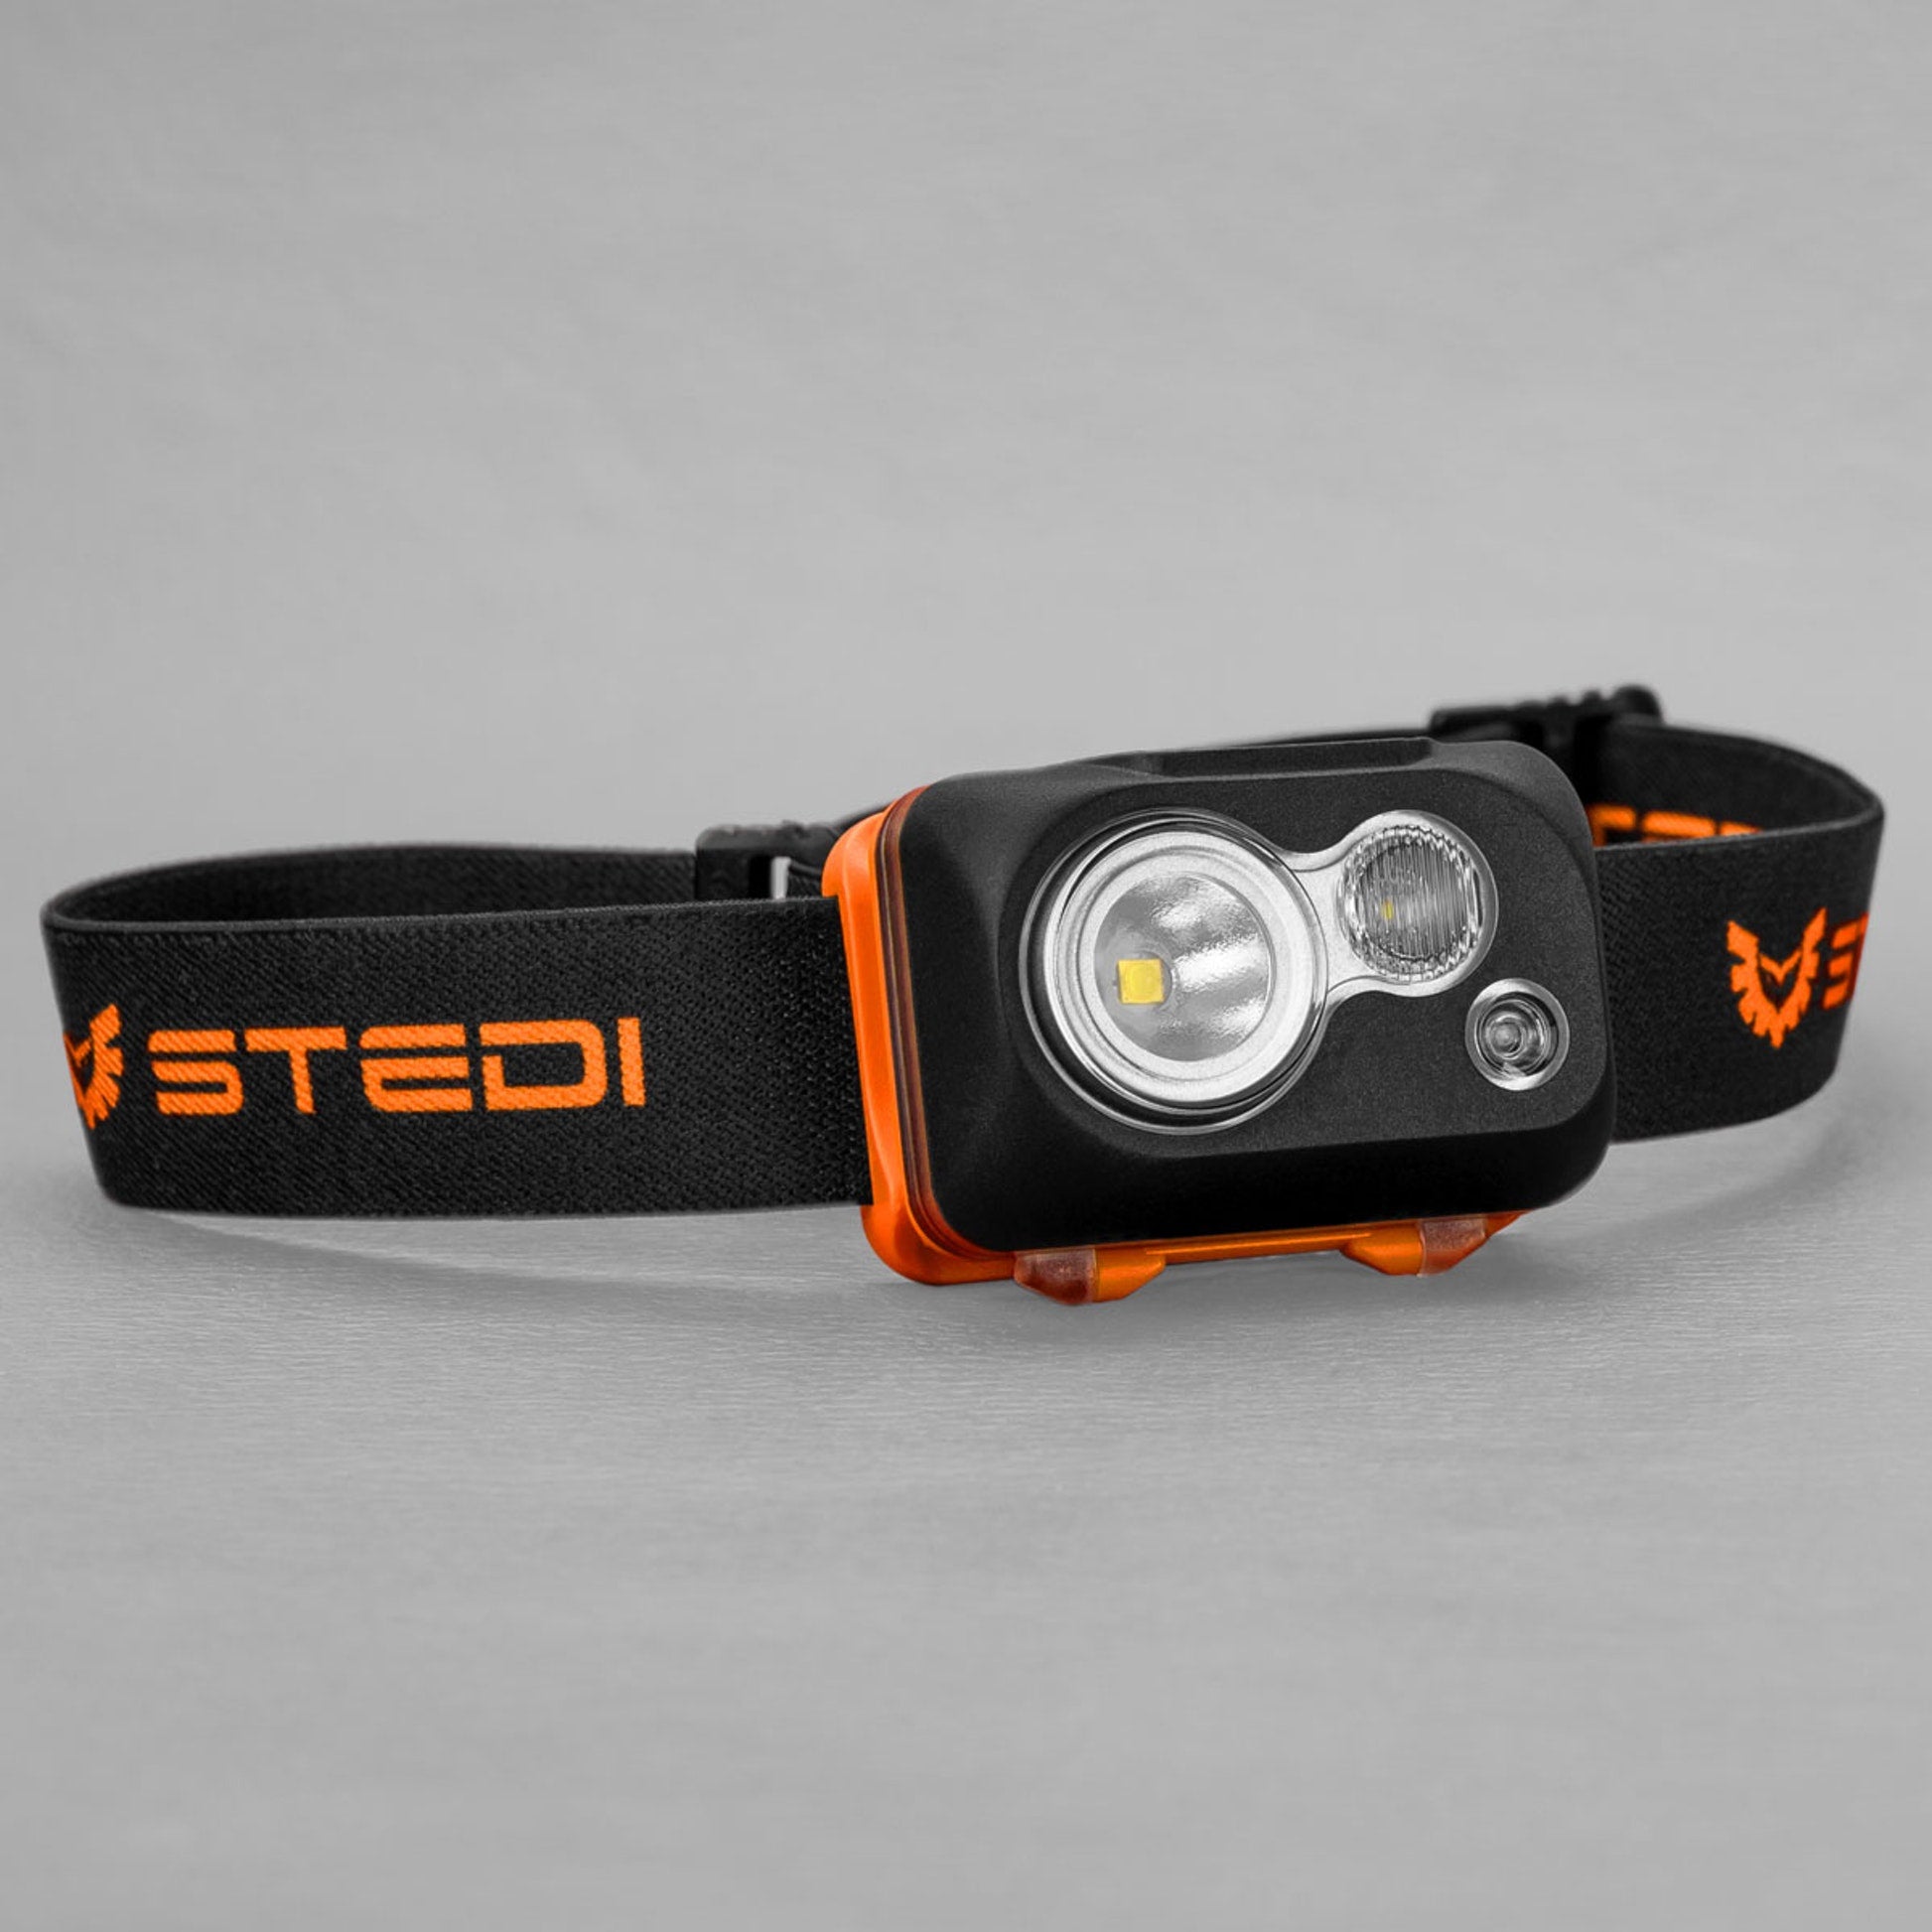 Stedi Type S LED Head Torch | Stedi